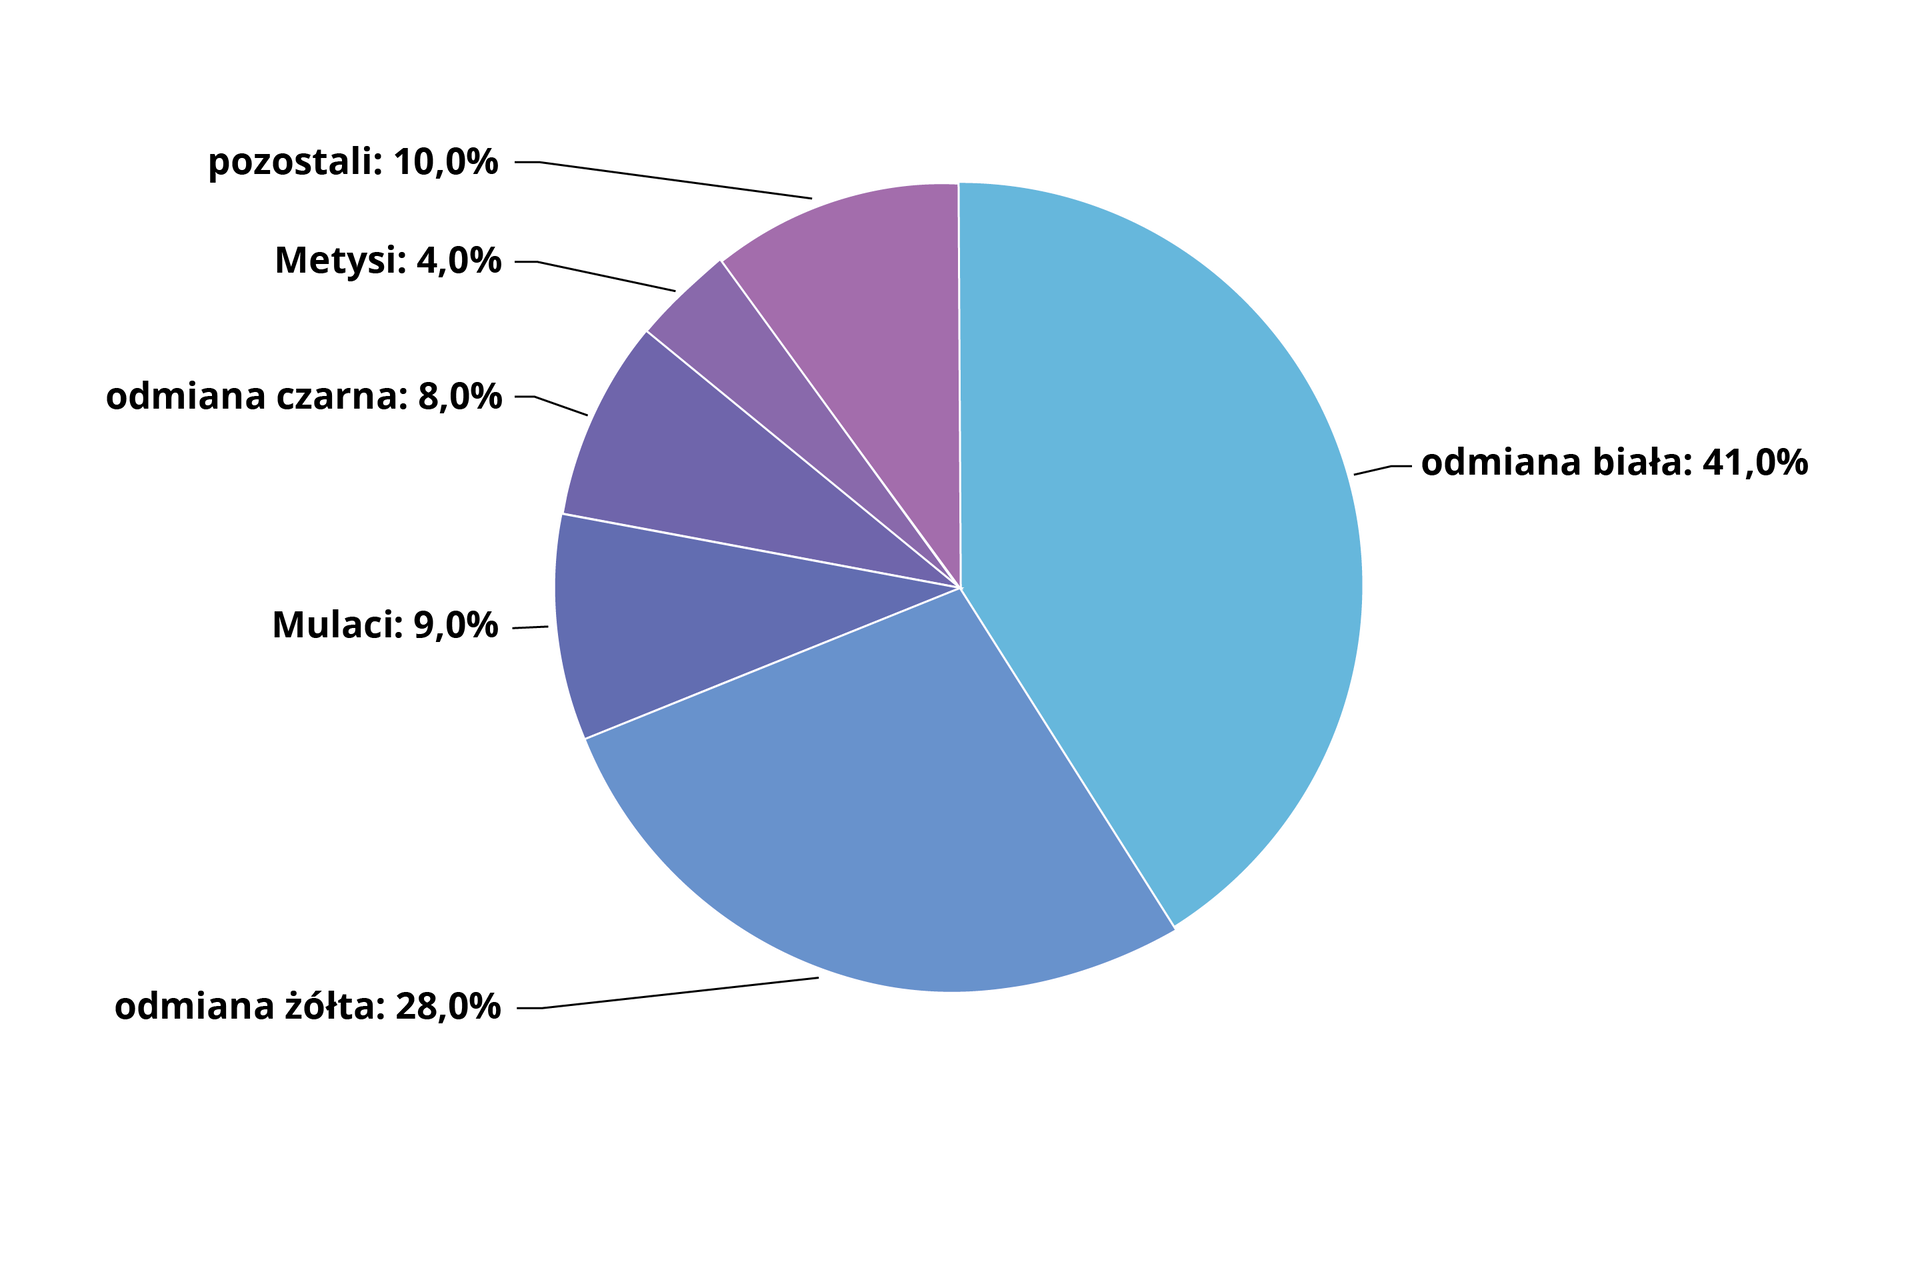 Wykres kołowy przedstawia udział odmian człowieka. Odmiana biała to 41%. Odmiana żółta to 28%. Mulaci to 9%. Odmiana czarna to 8%. Metysi to 4%. Pozostali to 10%.